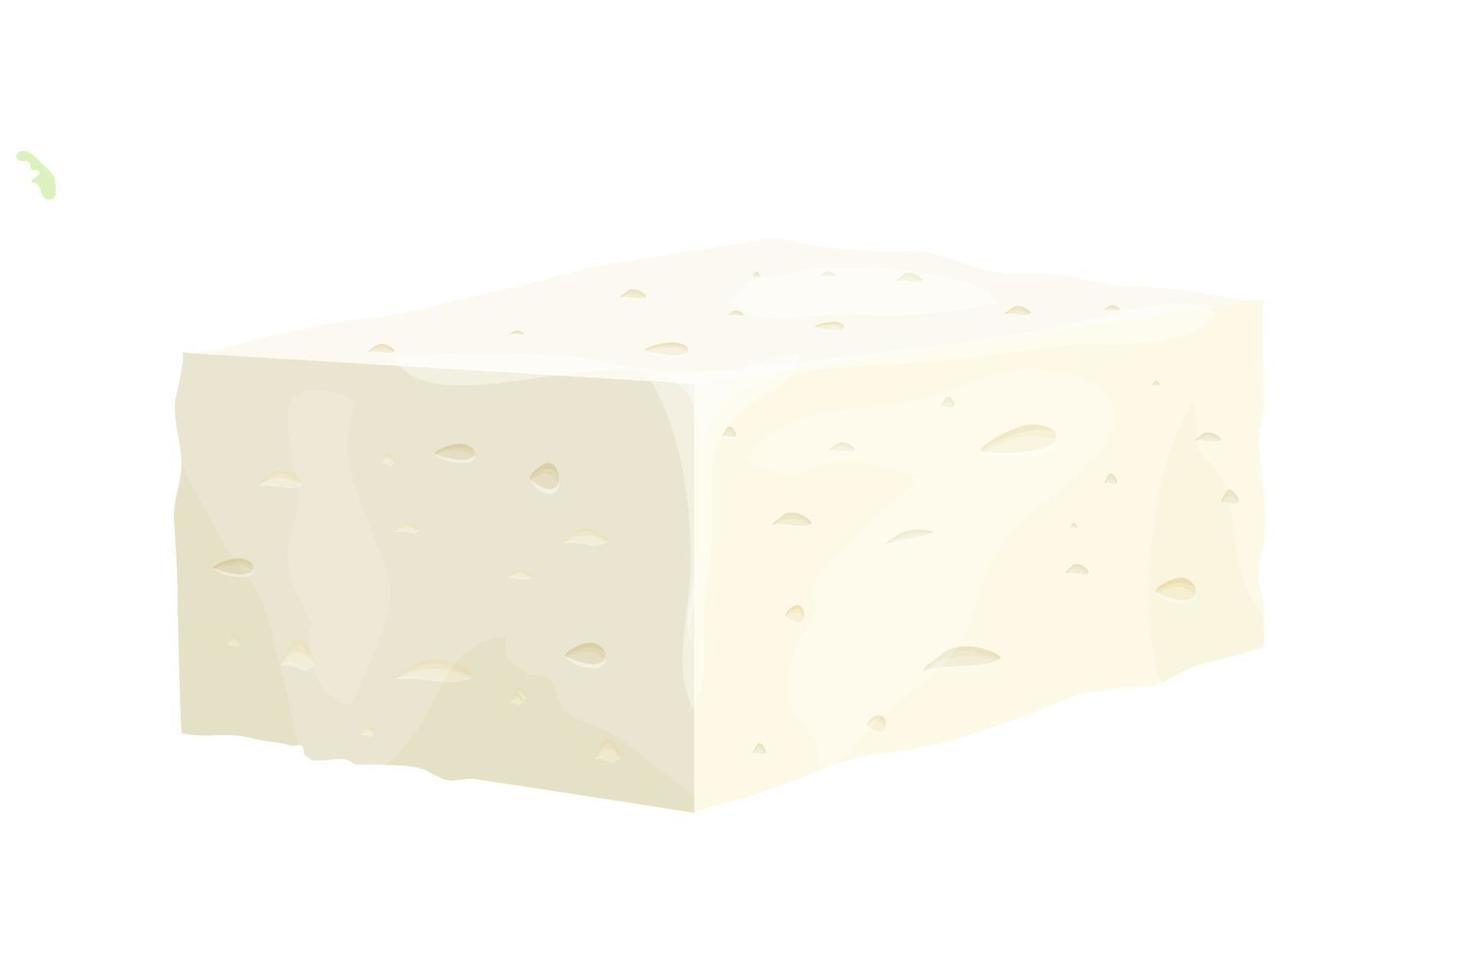 pedaço de queijo feta em ingrediente detalhado estilo cartoon isolado no fundo branco. queijo branco de coalhada grega feito de leite de navios ou feijão de leite. ilustração vetorial vetor